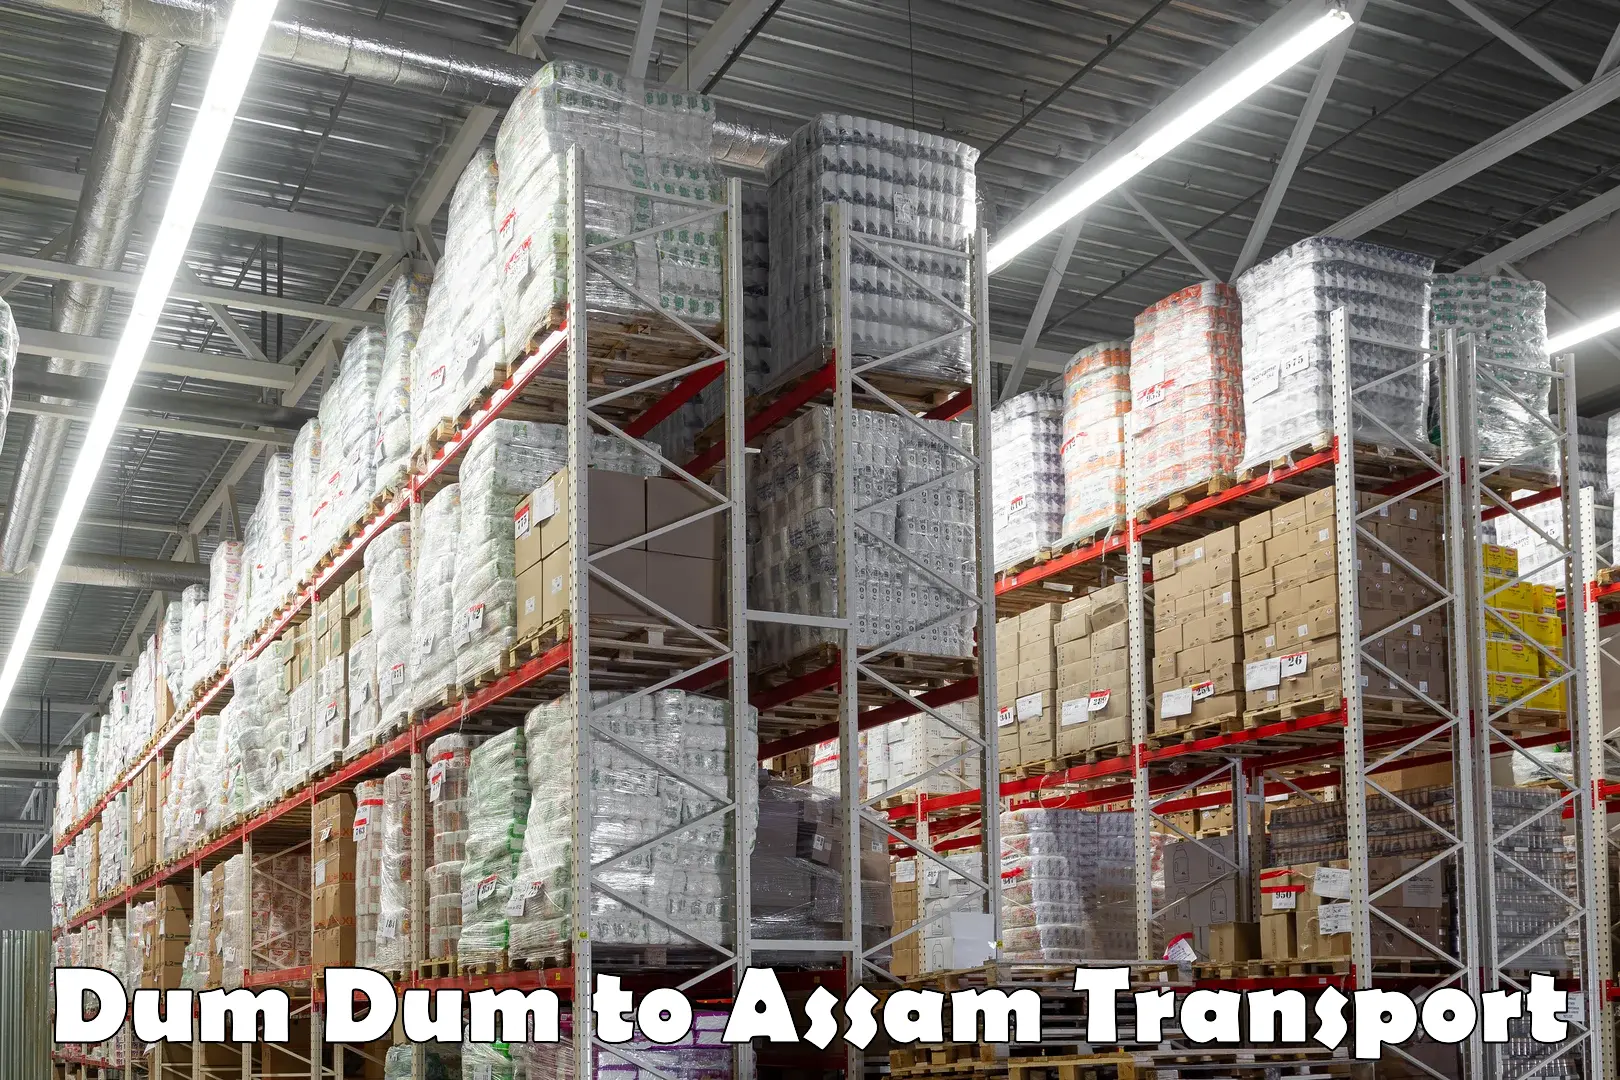 All India transport service Dum Dum to Assam